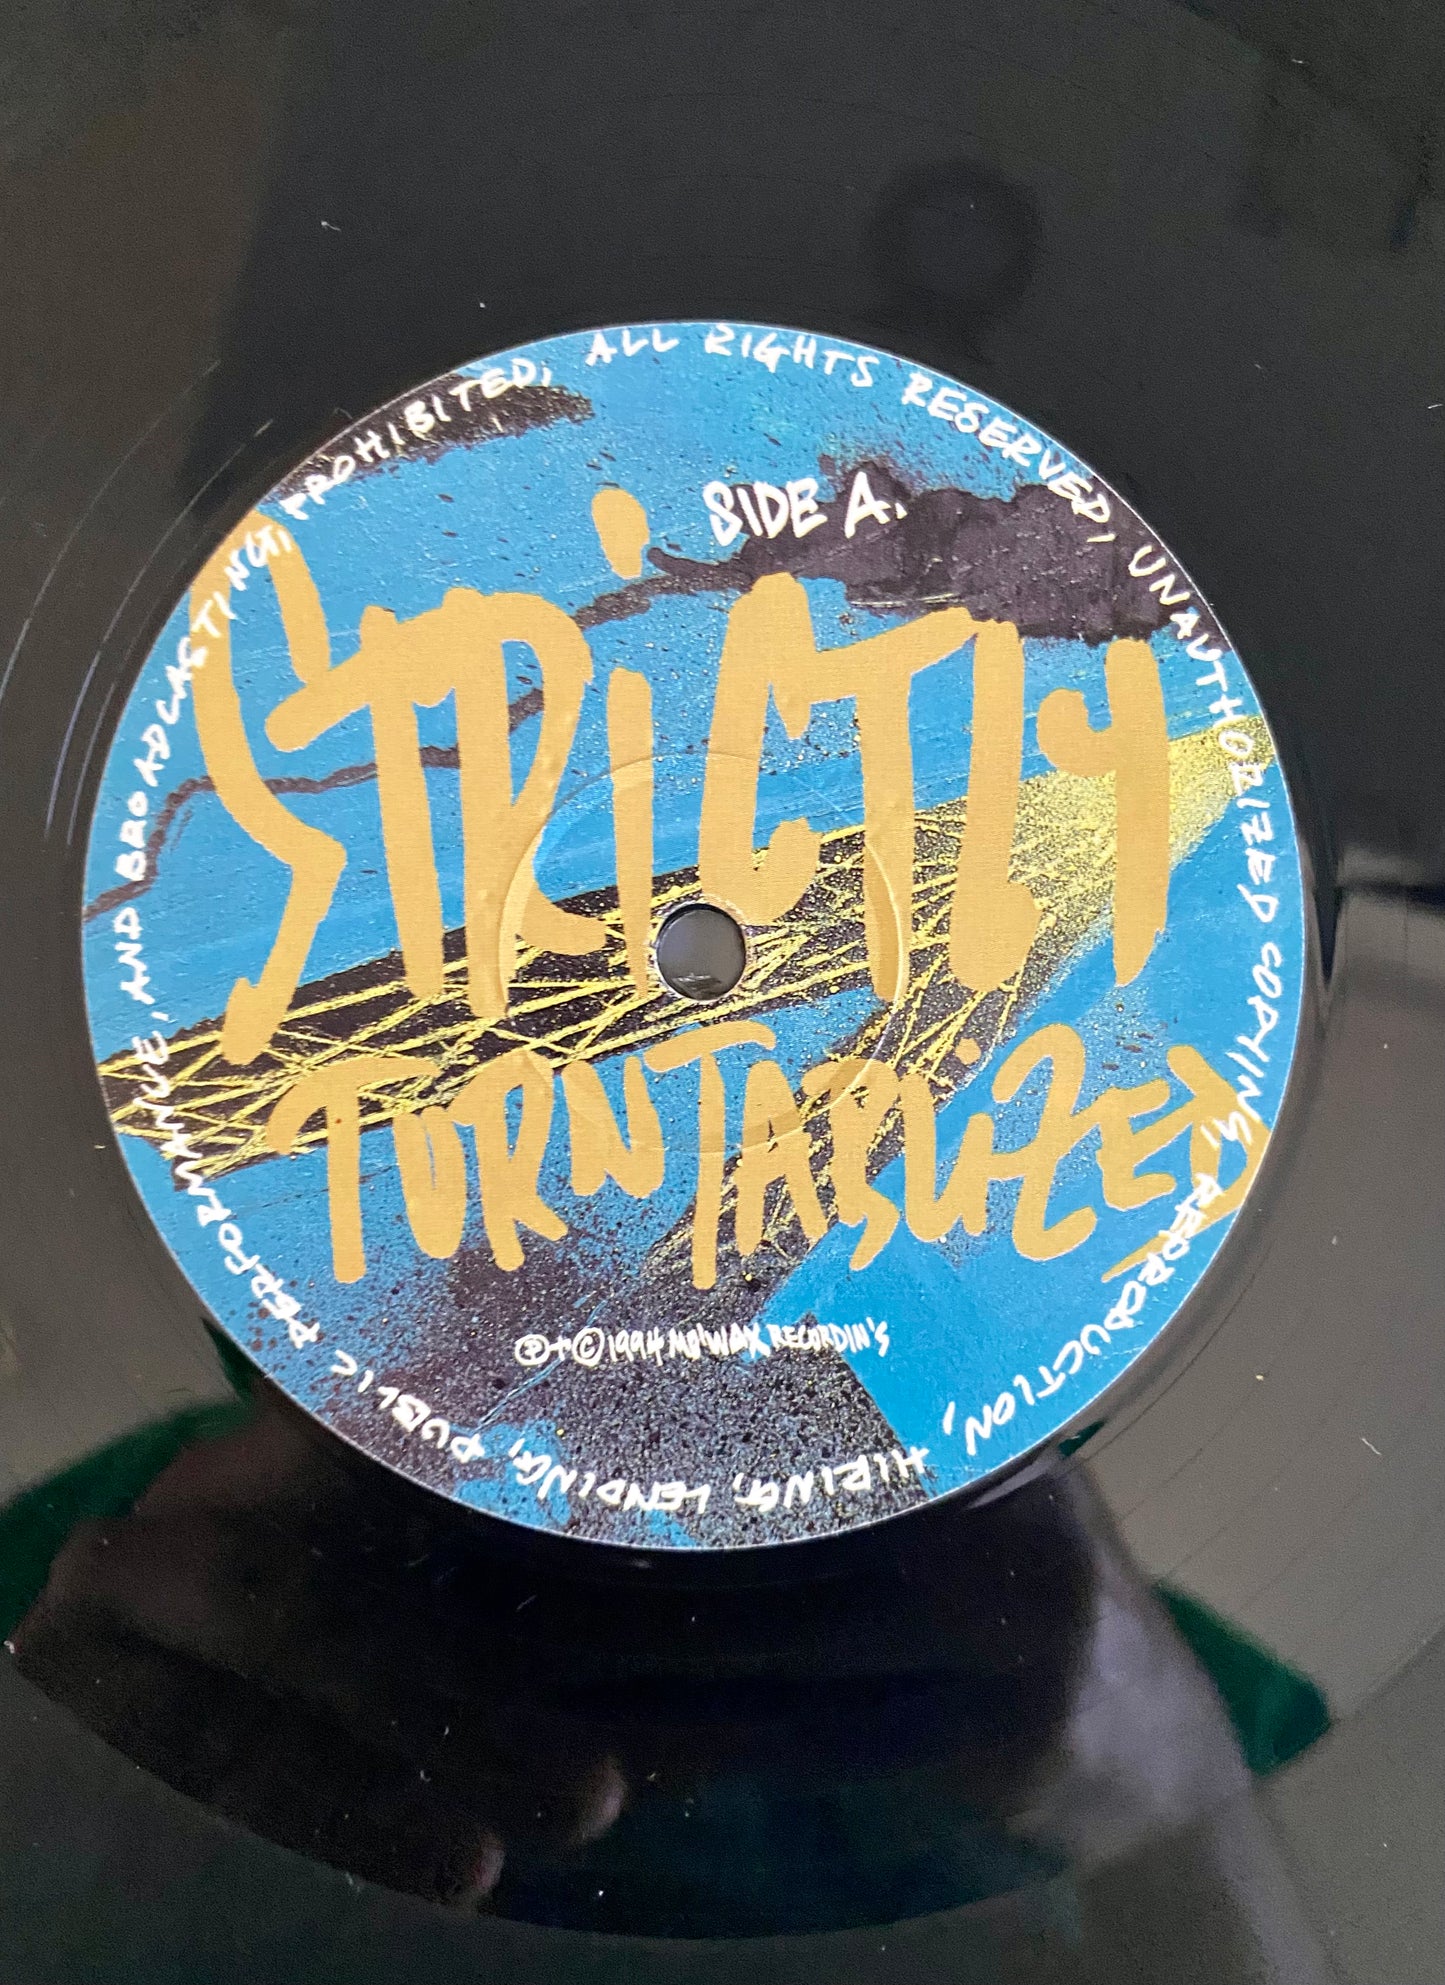 DJ Krush - Strictly Turntablized (2xLP, Album). ELECTRONIC